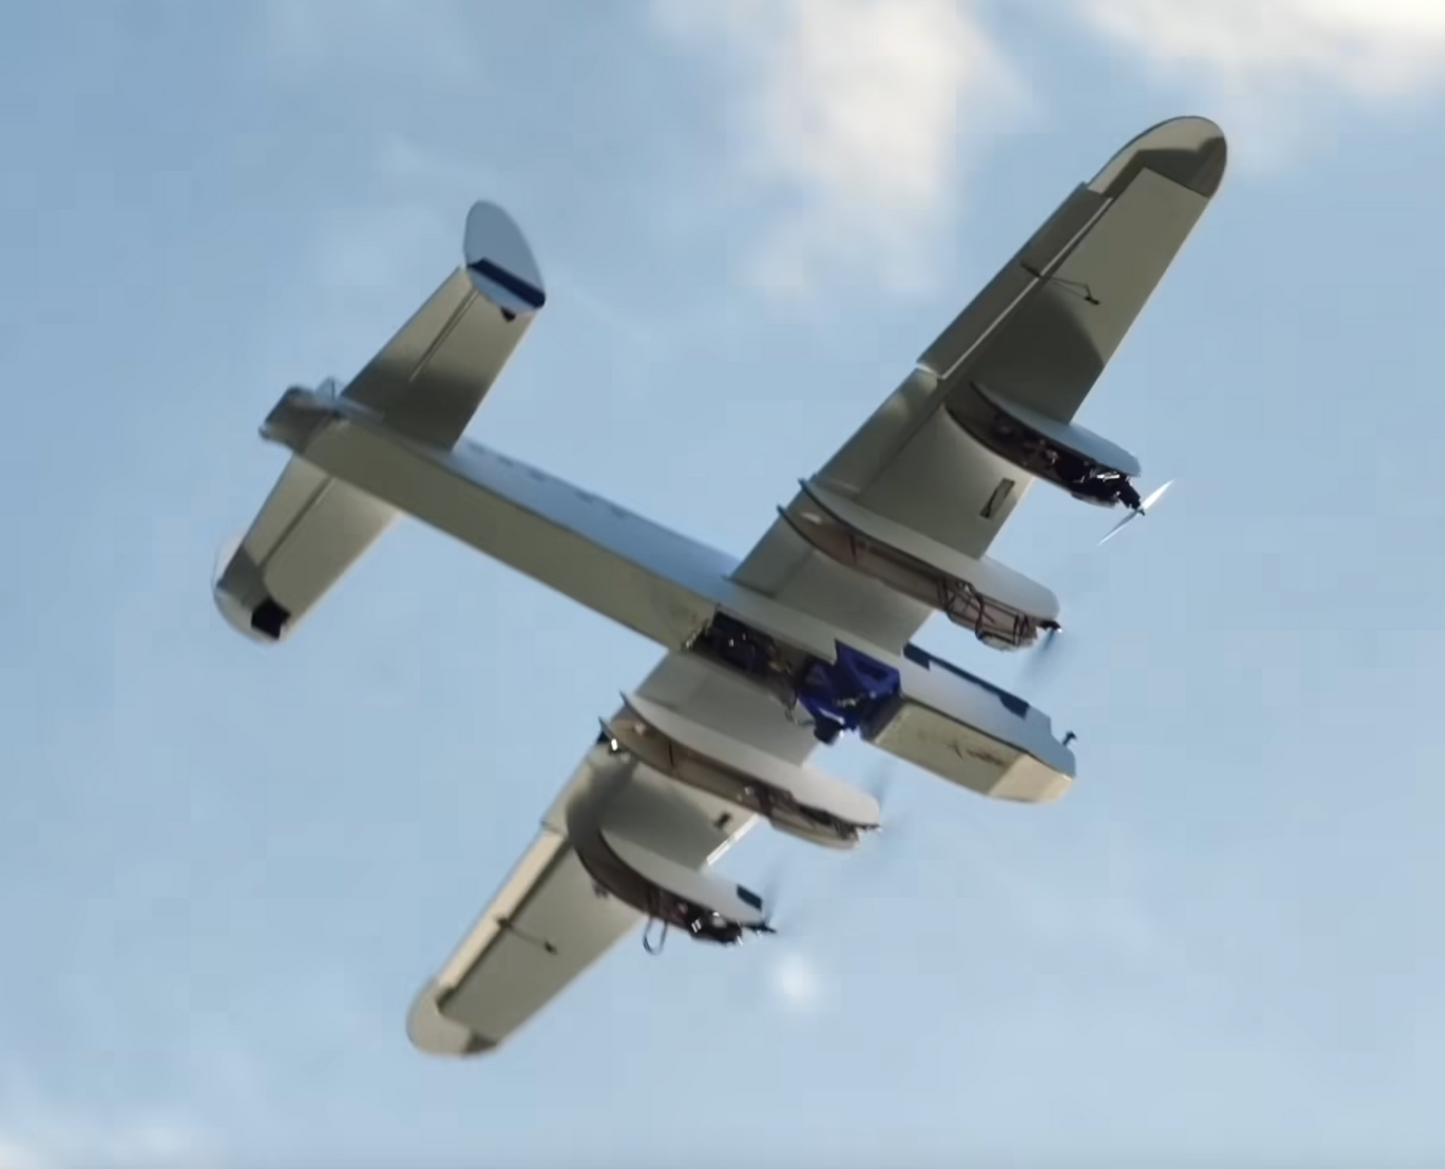 Project Air Lancaster Bomber RC Plane Plans